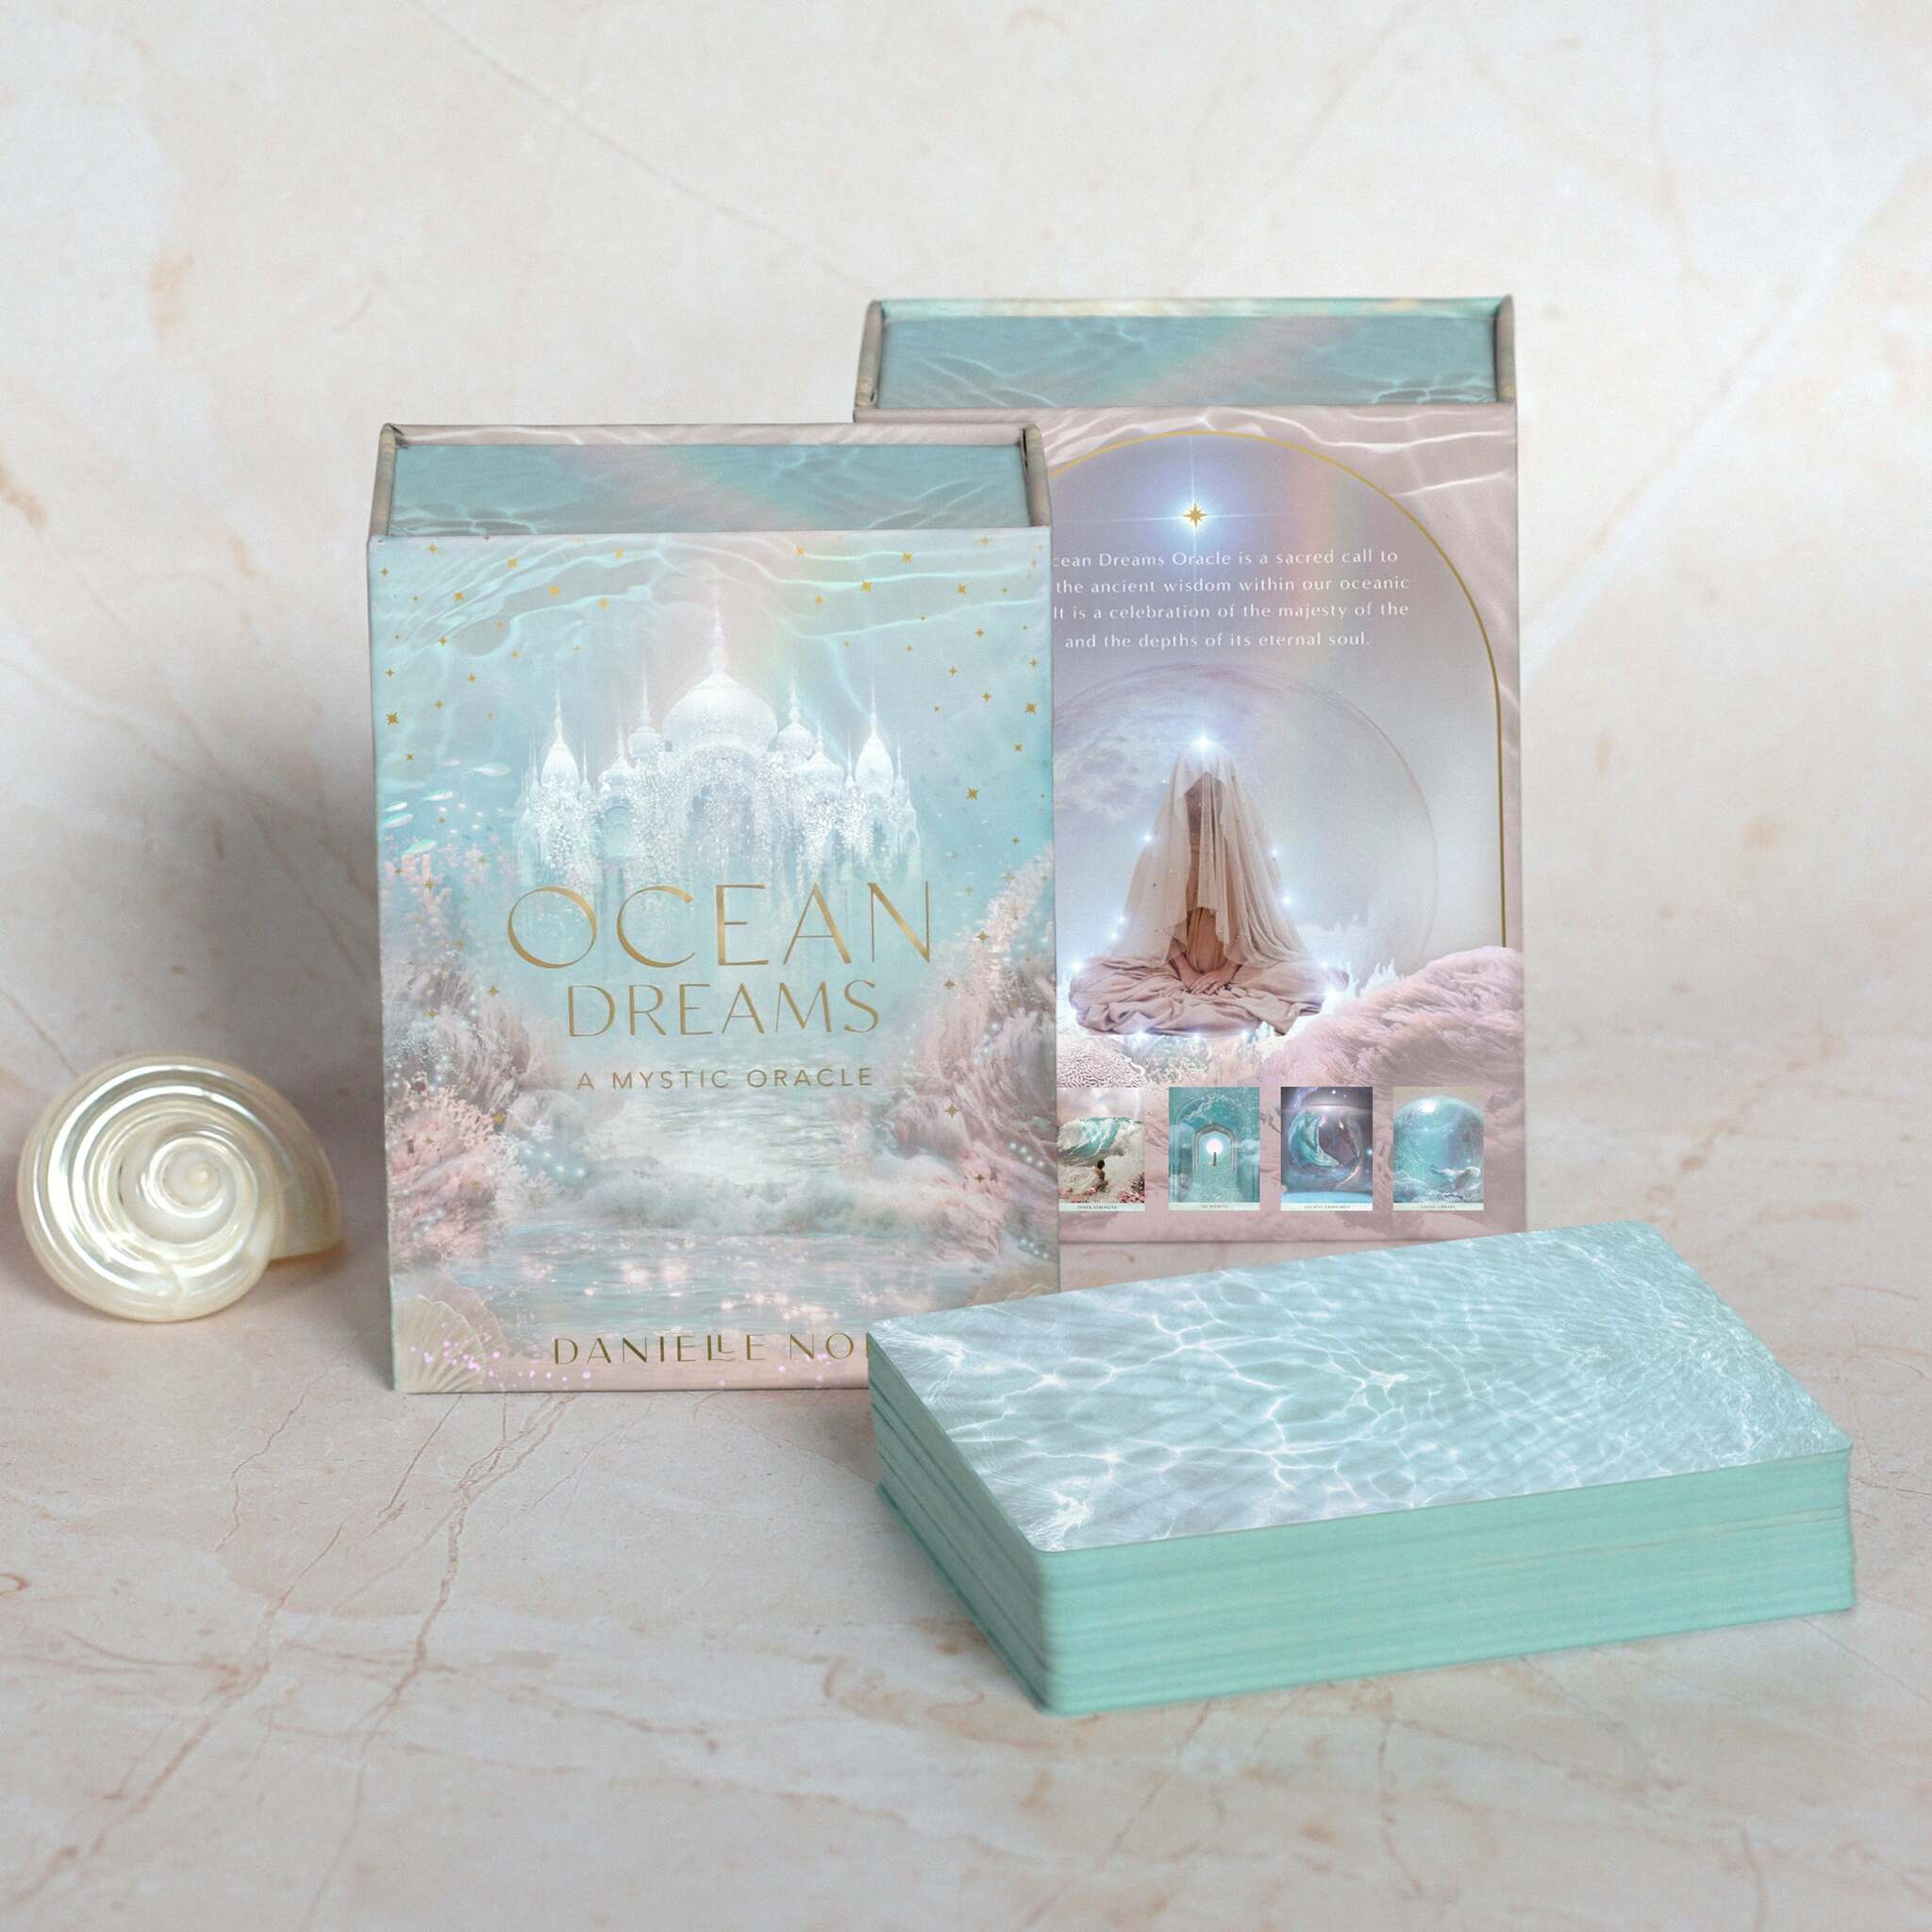 Ocean Dreams Oracle!  - orakelkort av Danielle Noel